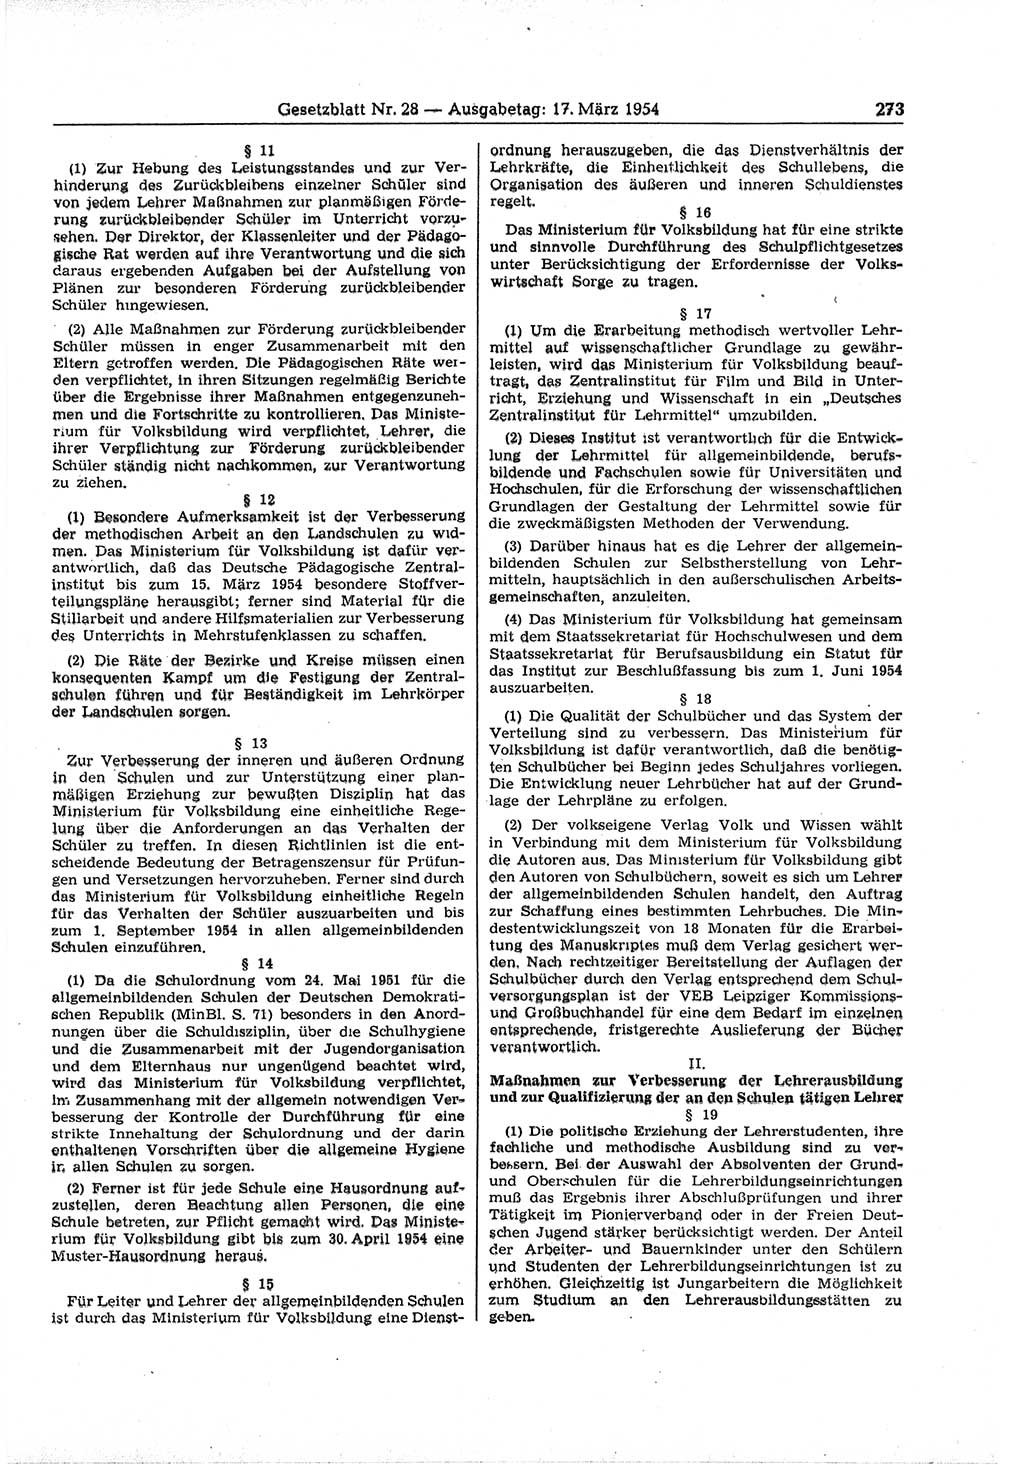 Gesetzblatt (GBl.) der Deutschen Demokratischen Republik (DDR) 1954, Seite 273 (GBl. DDR 1954, S. 273)